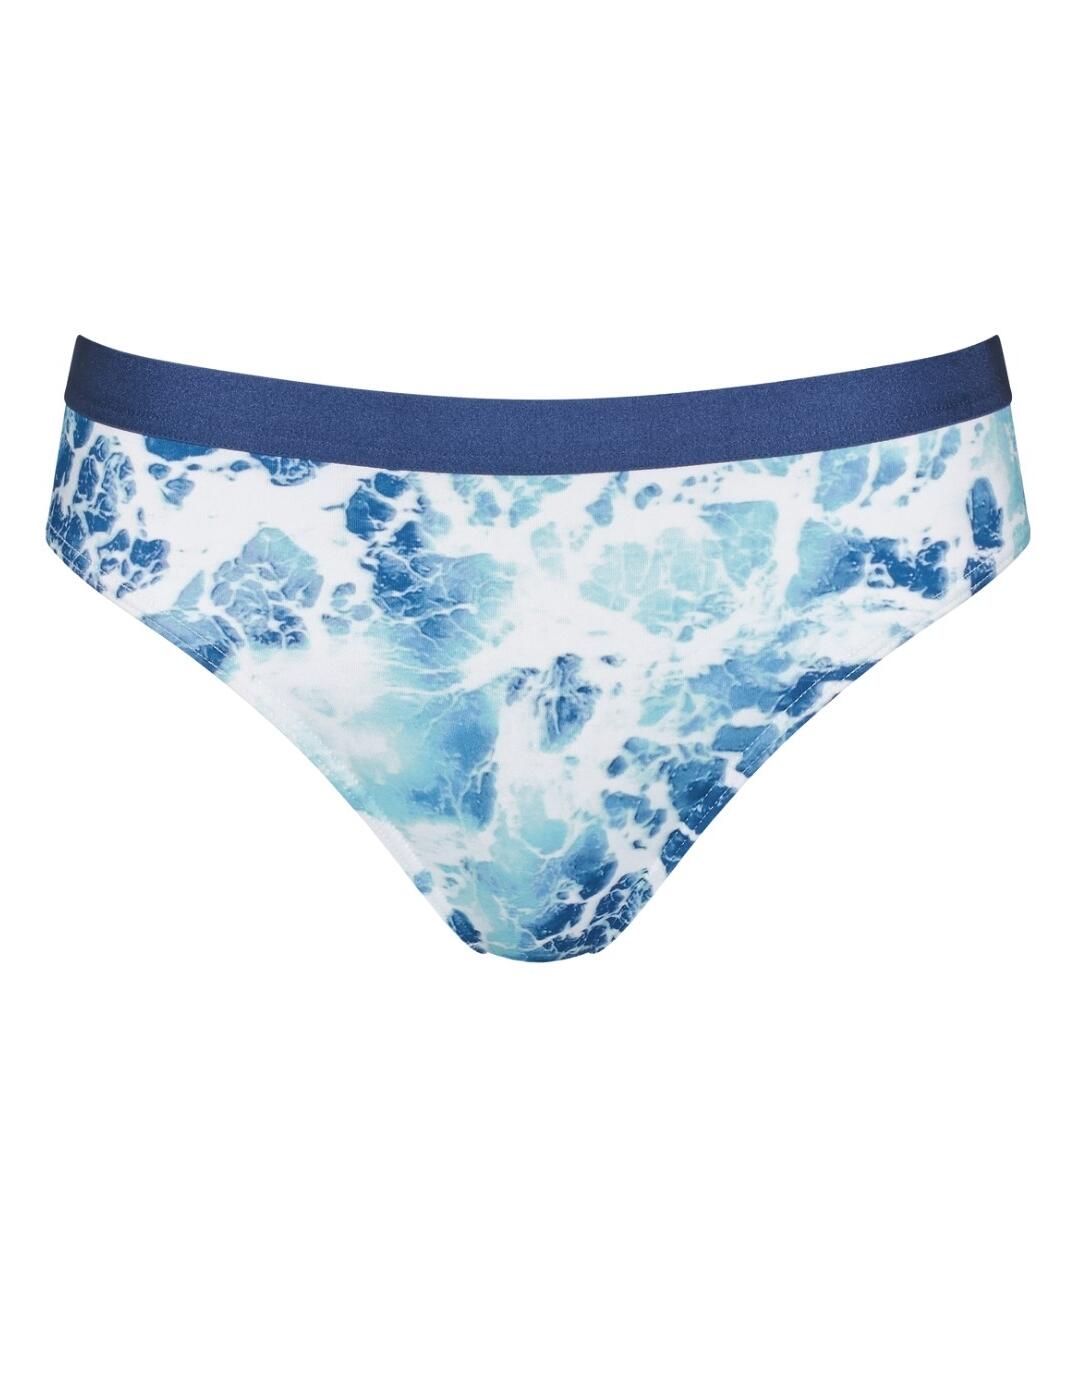 10207707 Sloggi Women Shore Yap Islands High Leg Bikini Brief  - 10207707 Multi